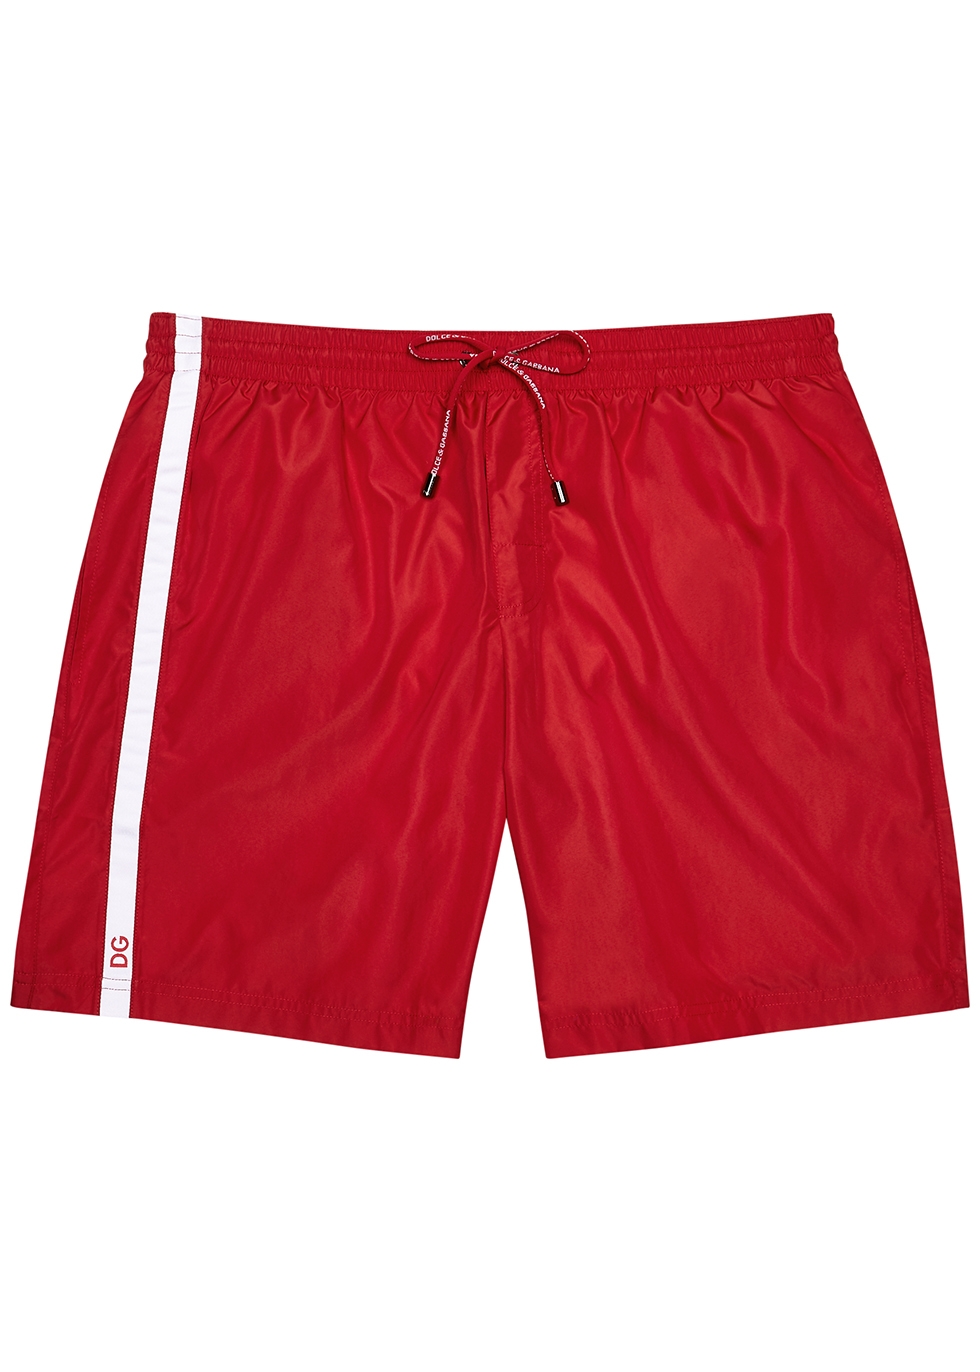 Red nylon swim shorts